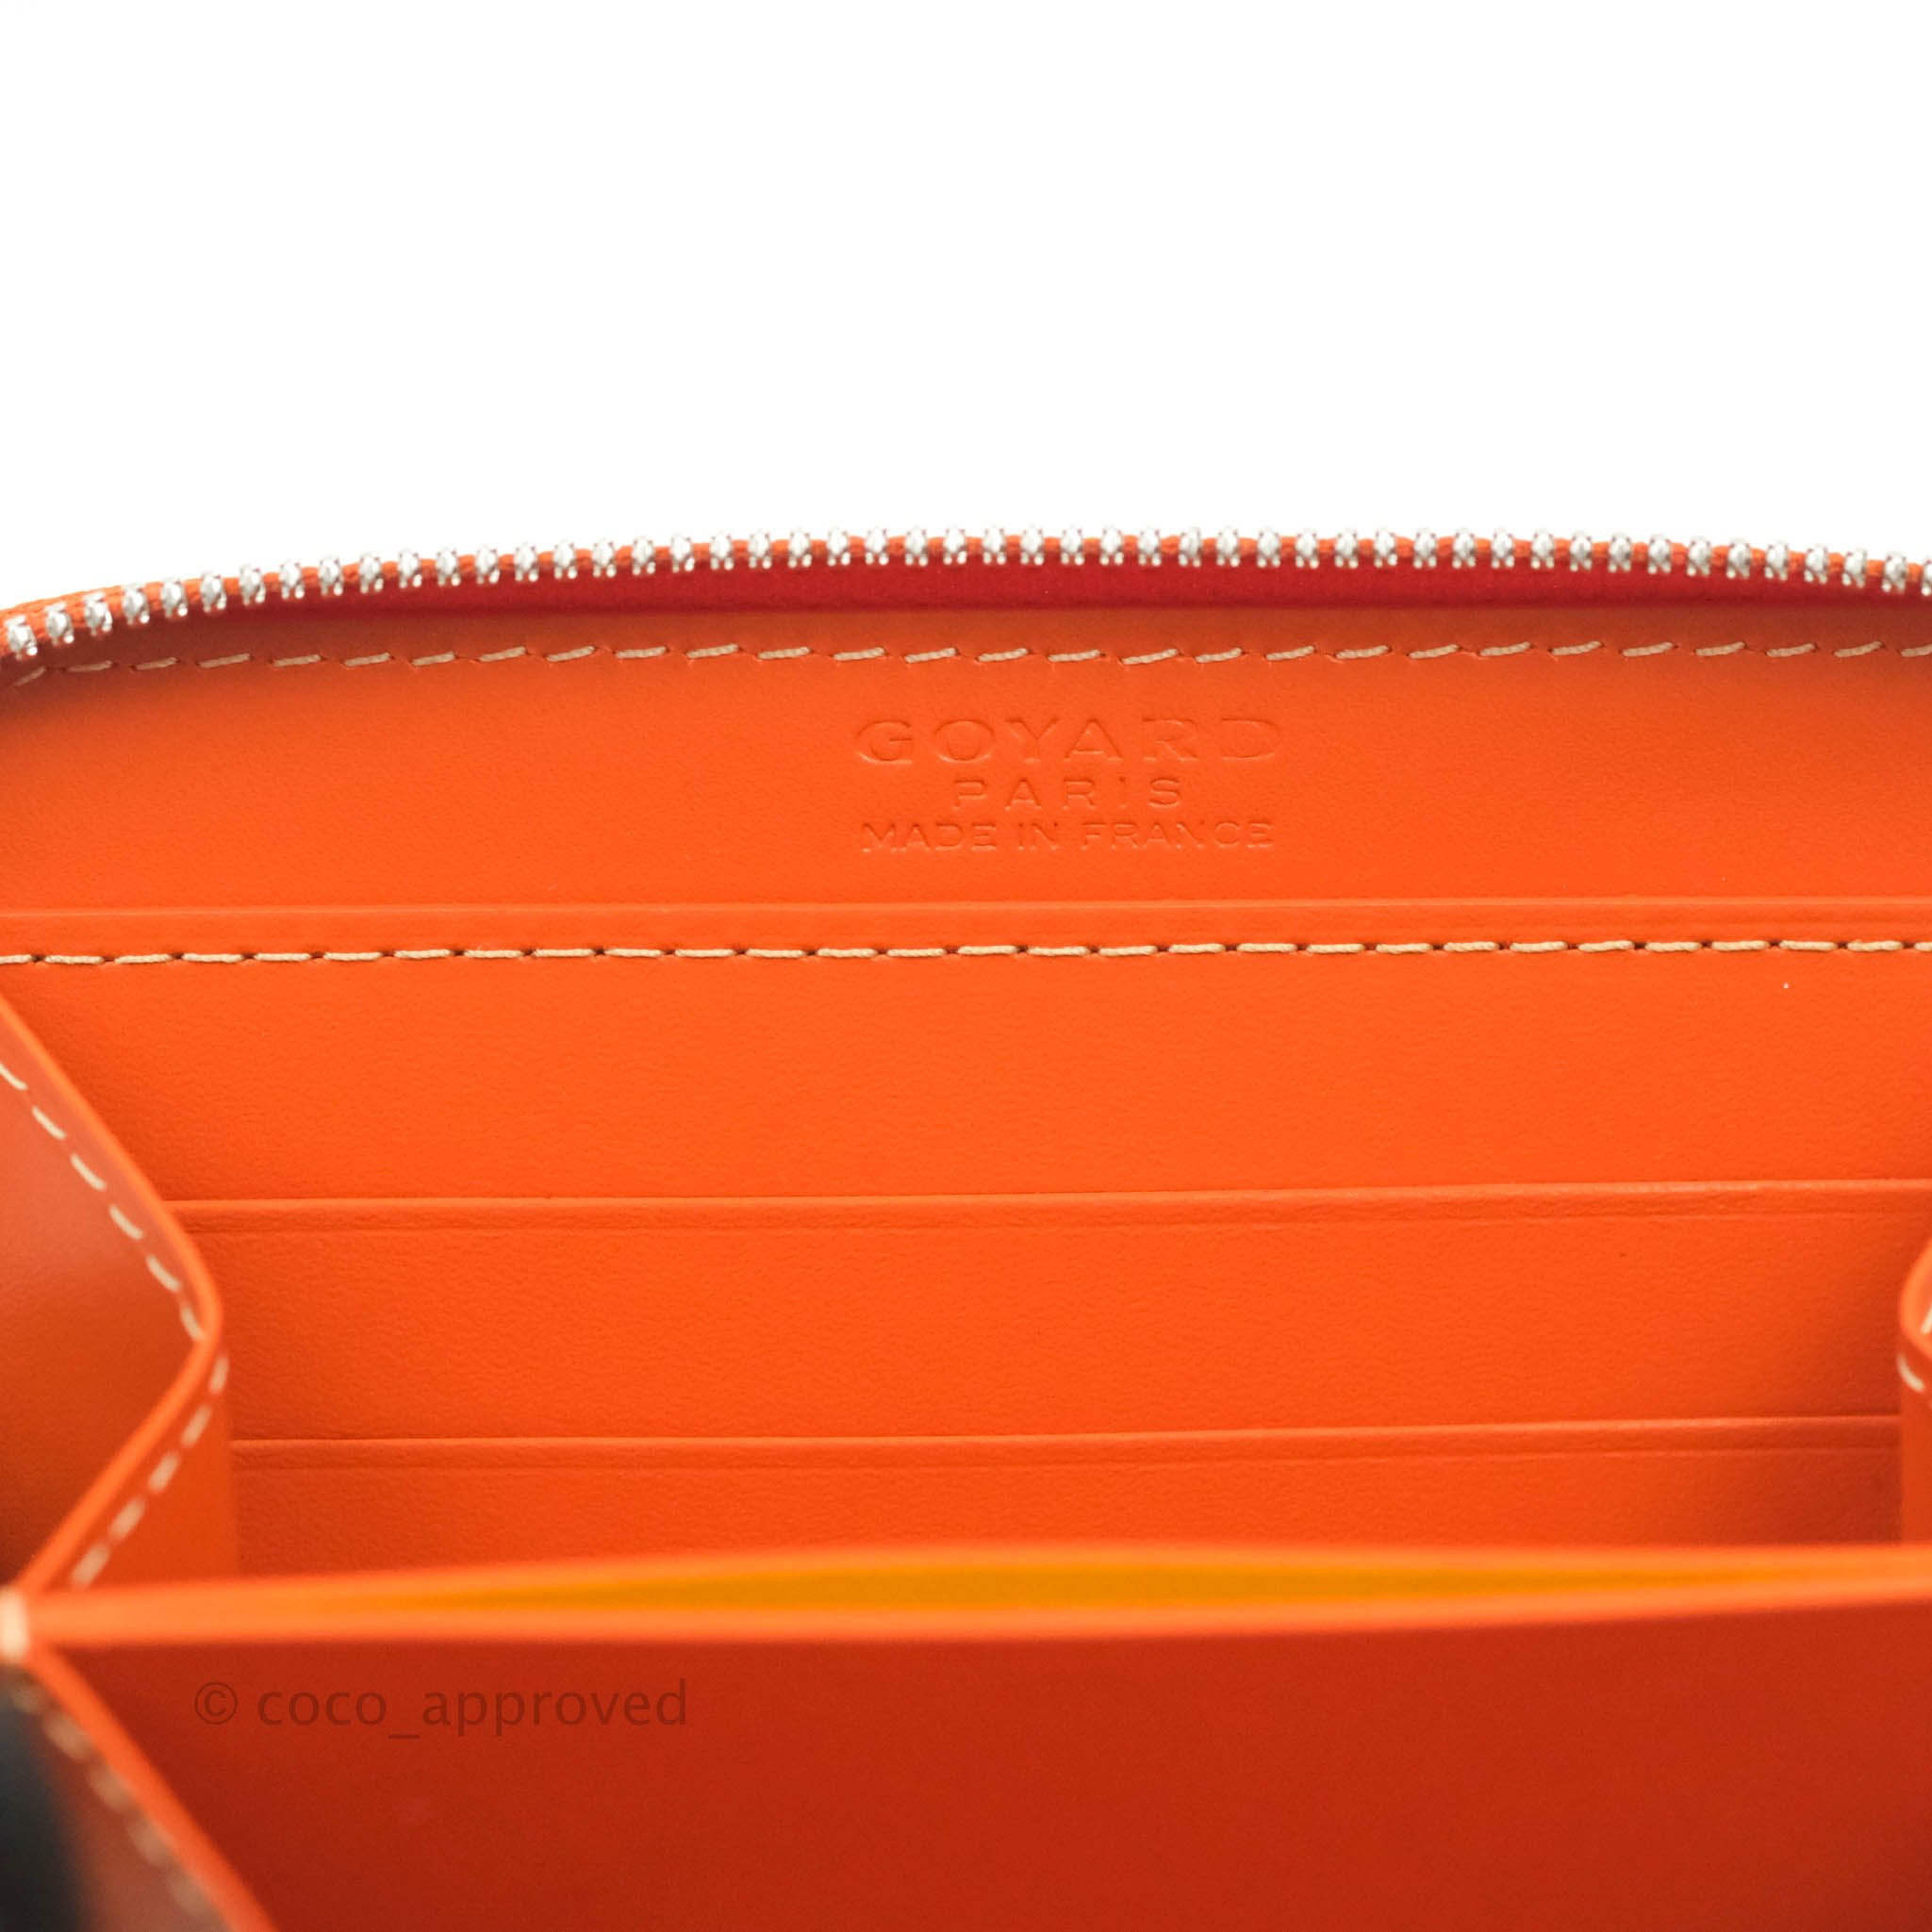 Goyard Matignon Wallet GM Orange in Canvas/Calfskin with Palladium